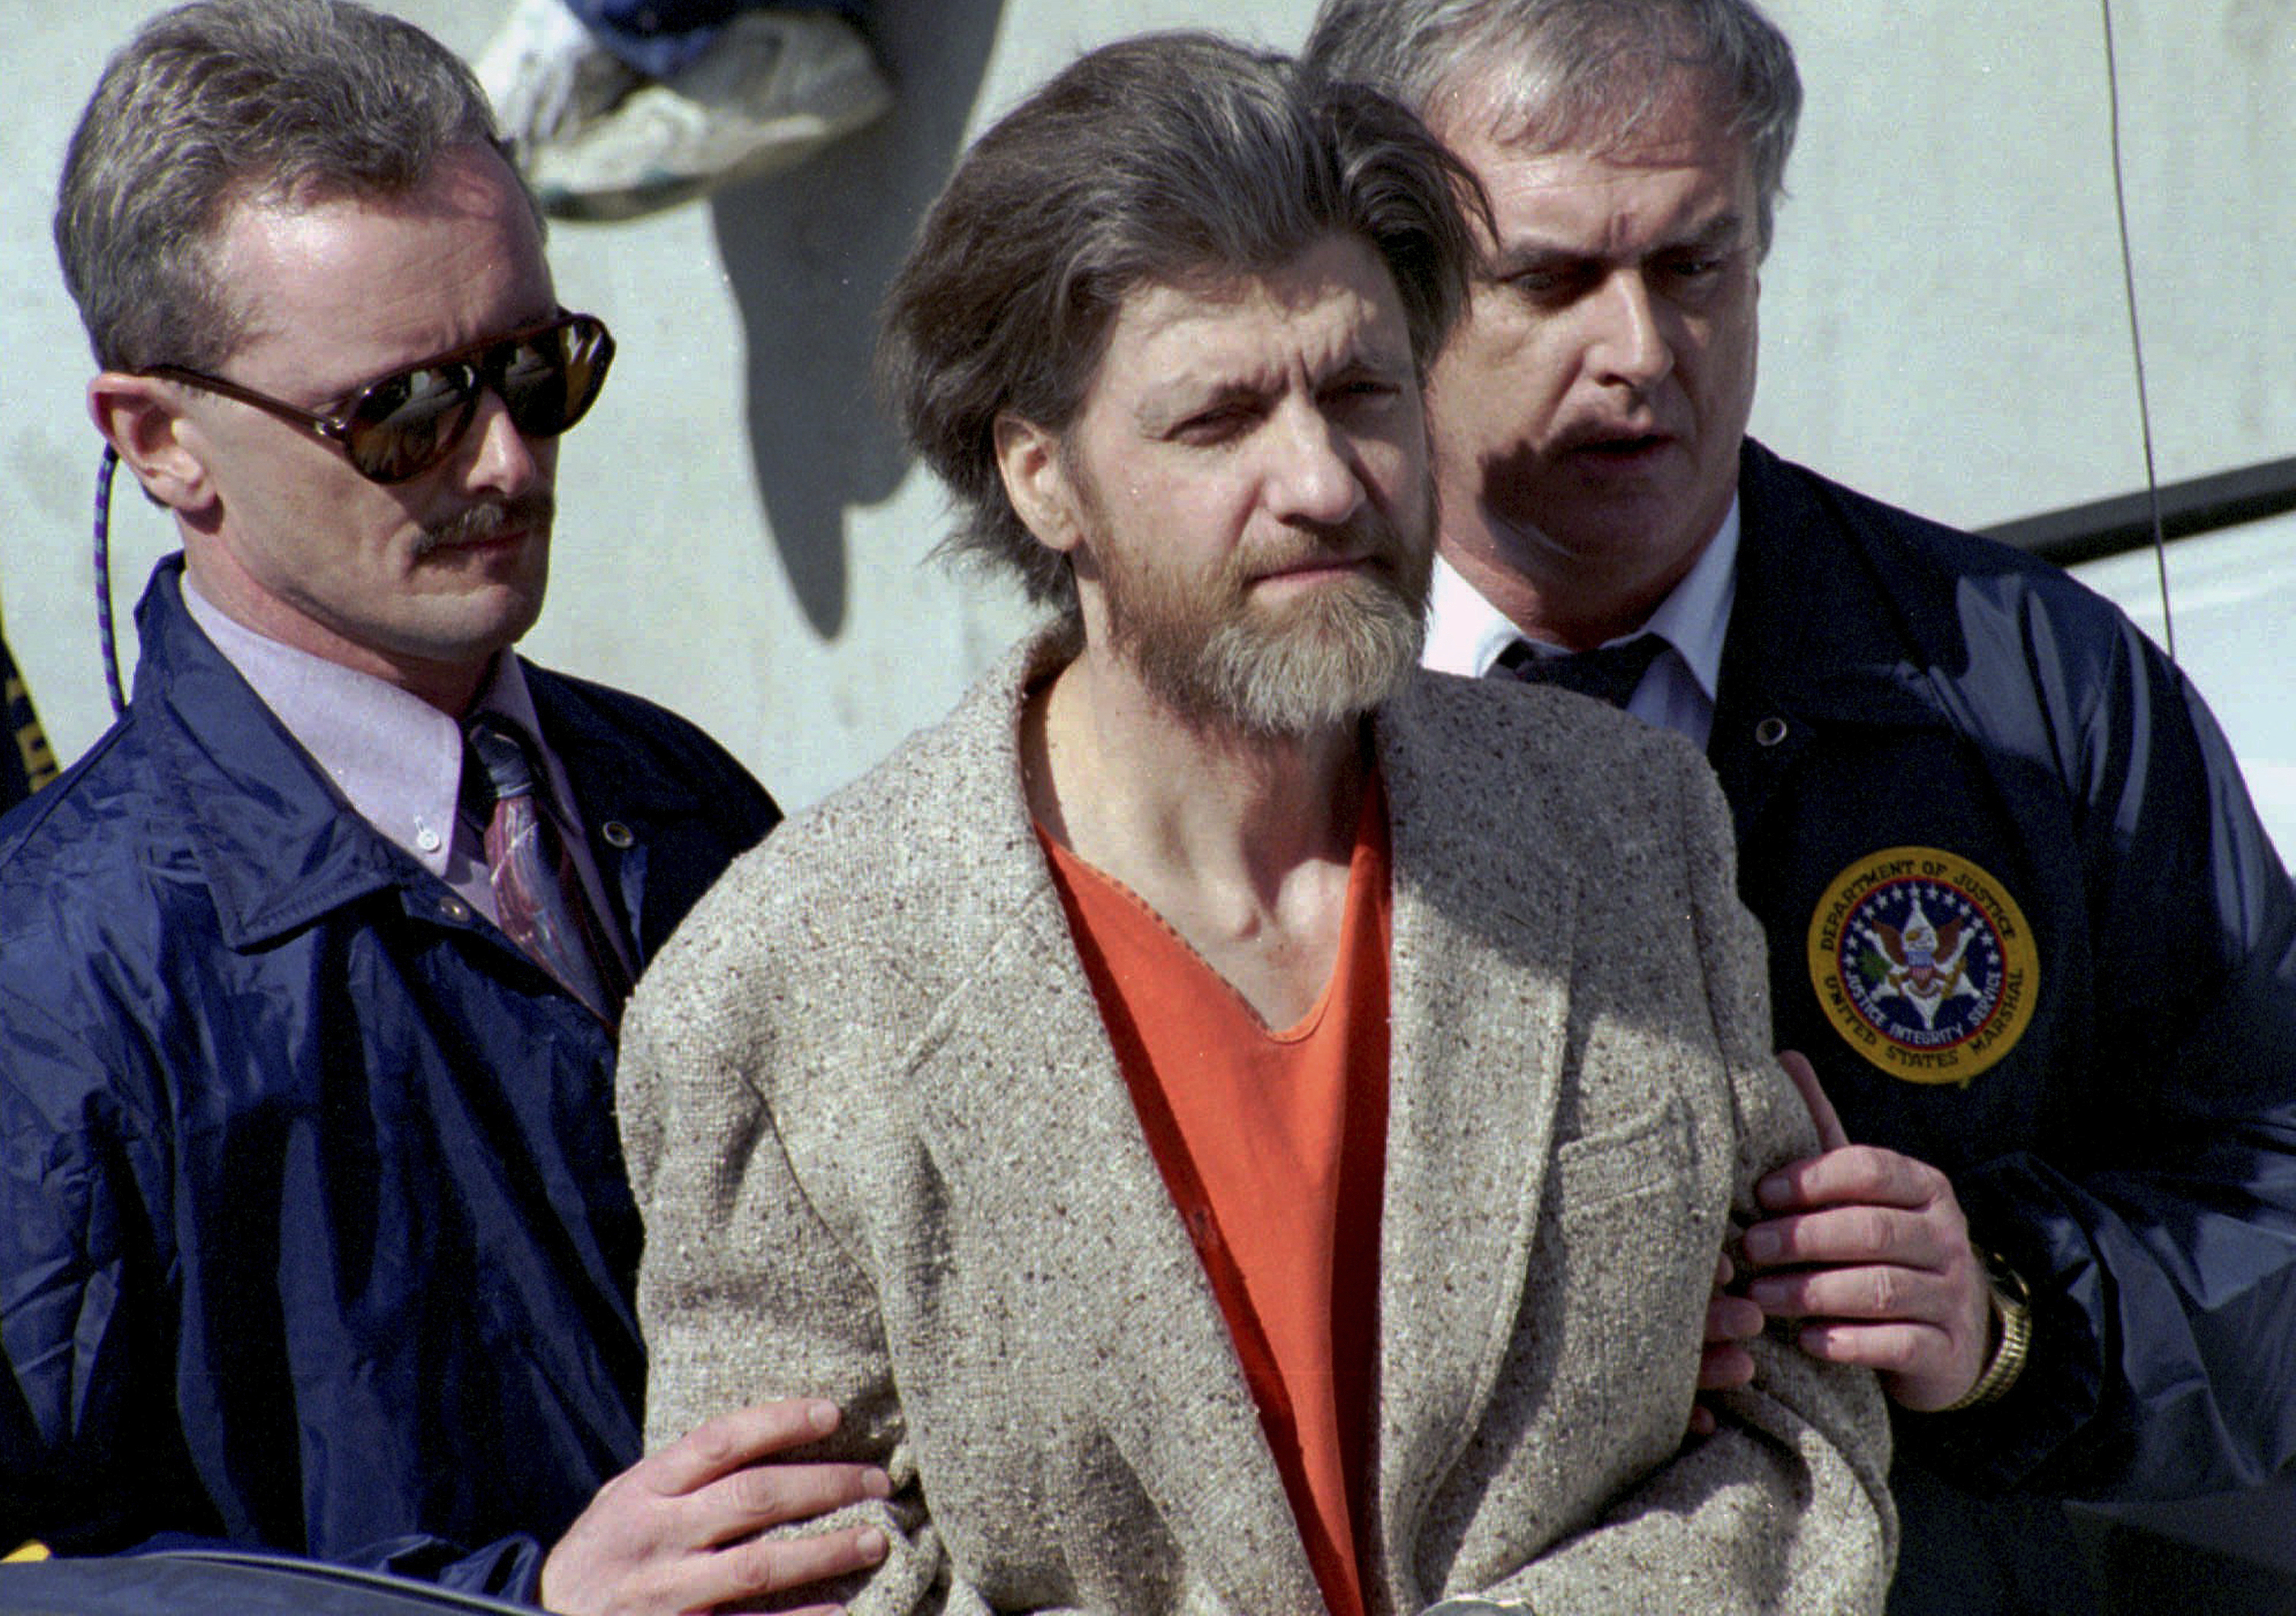 Muere Ted Kaczynski, Unabomber, en una prisión federal en EEUU